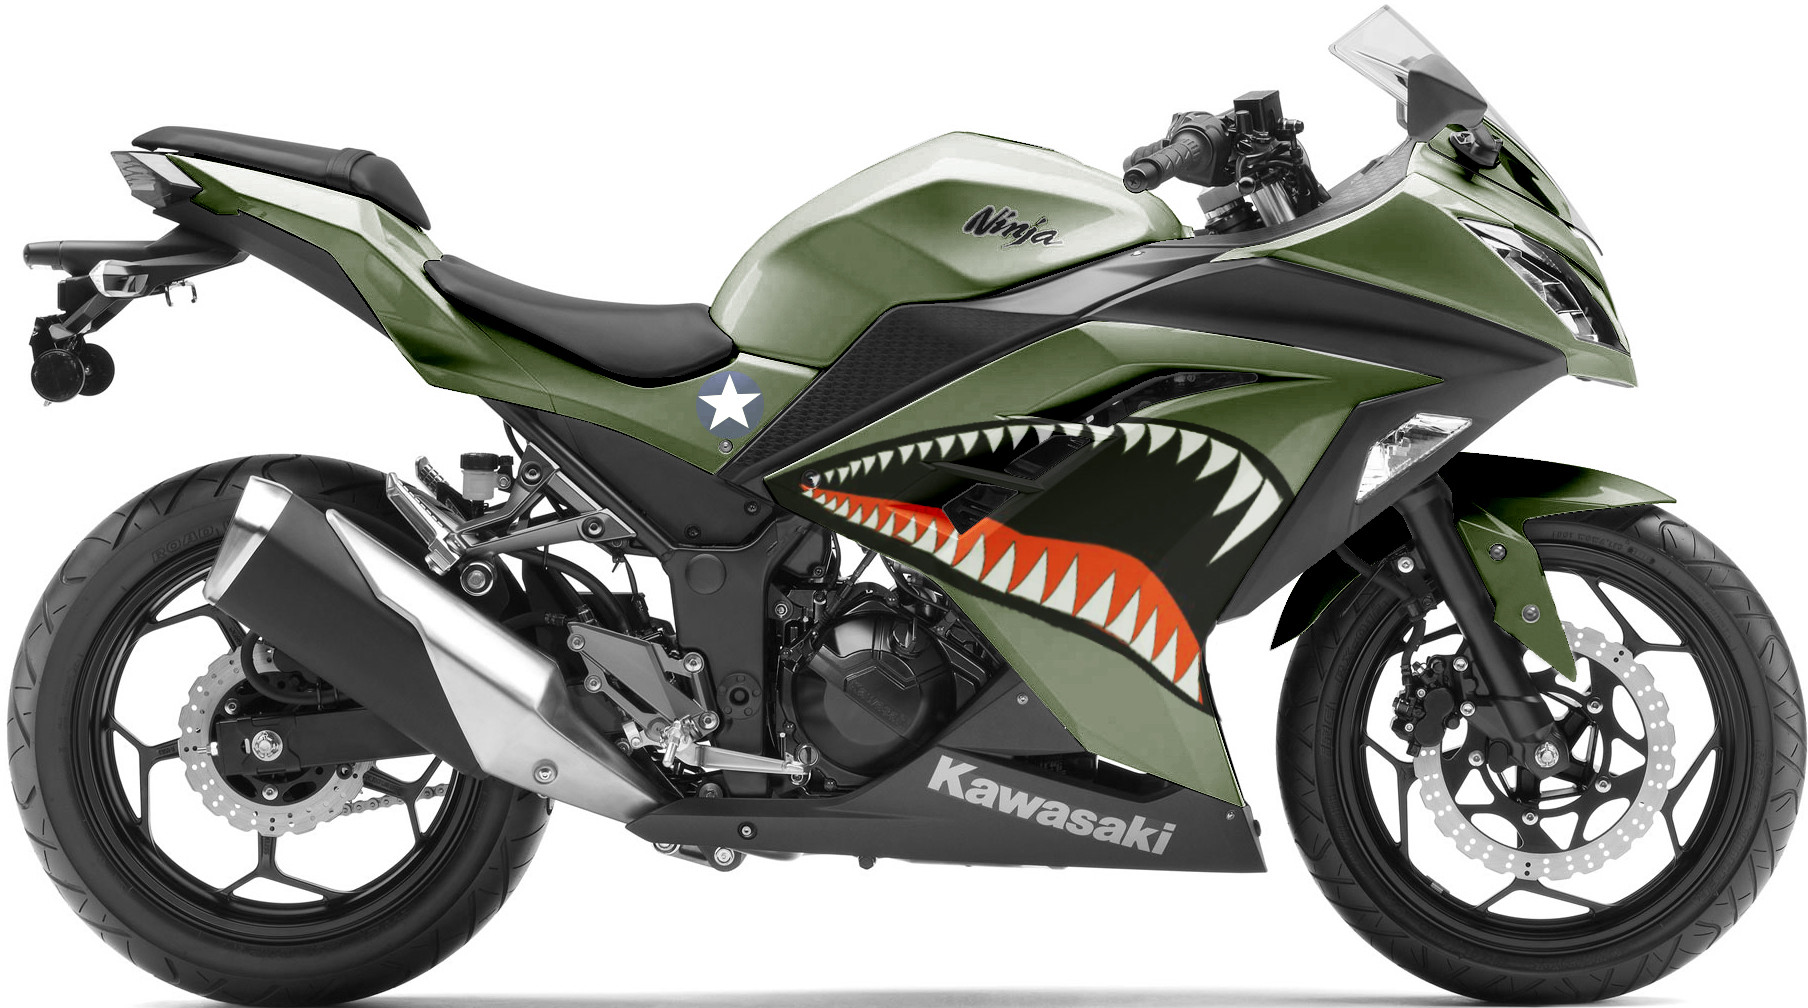 Kawasaki ninja (кавасаки ниндзя)  z 1000 sx: обзор и технические характеристики модели